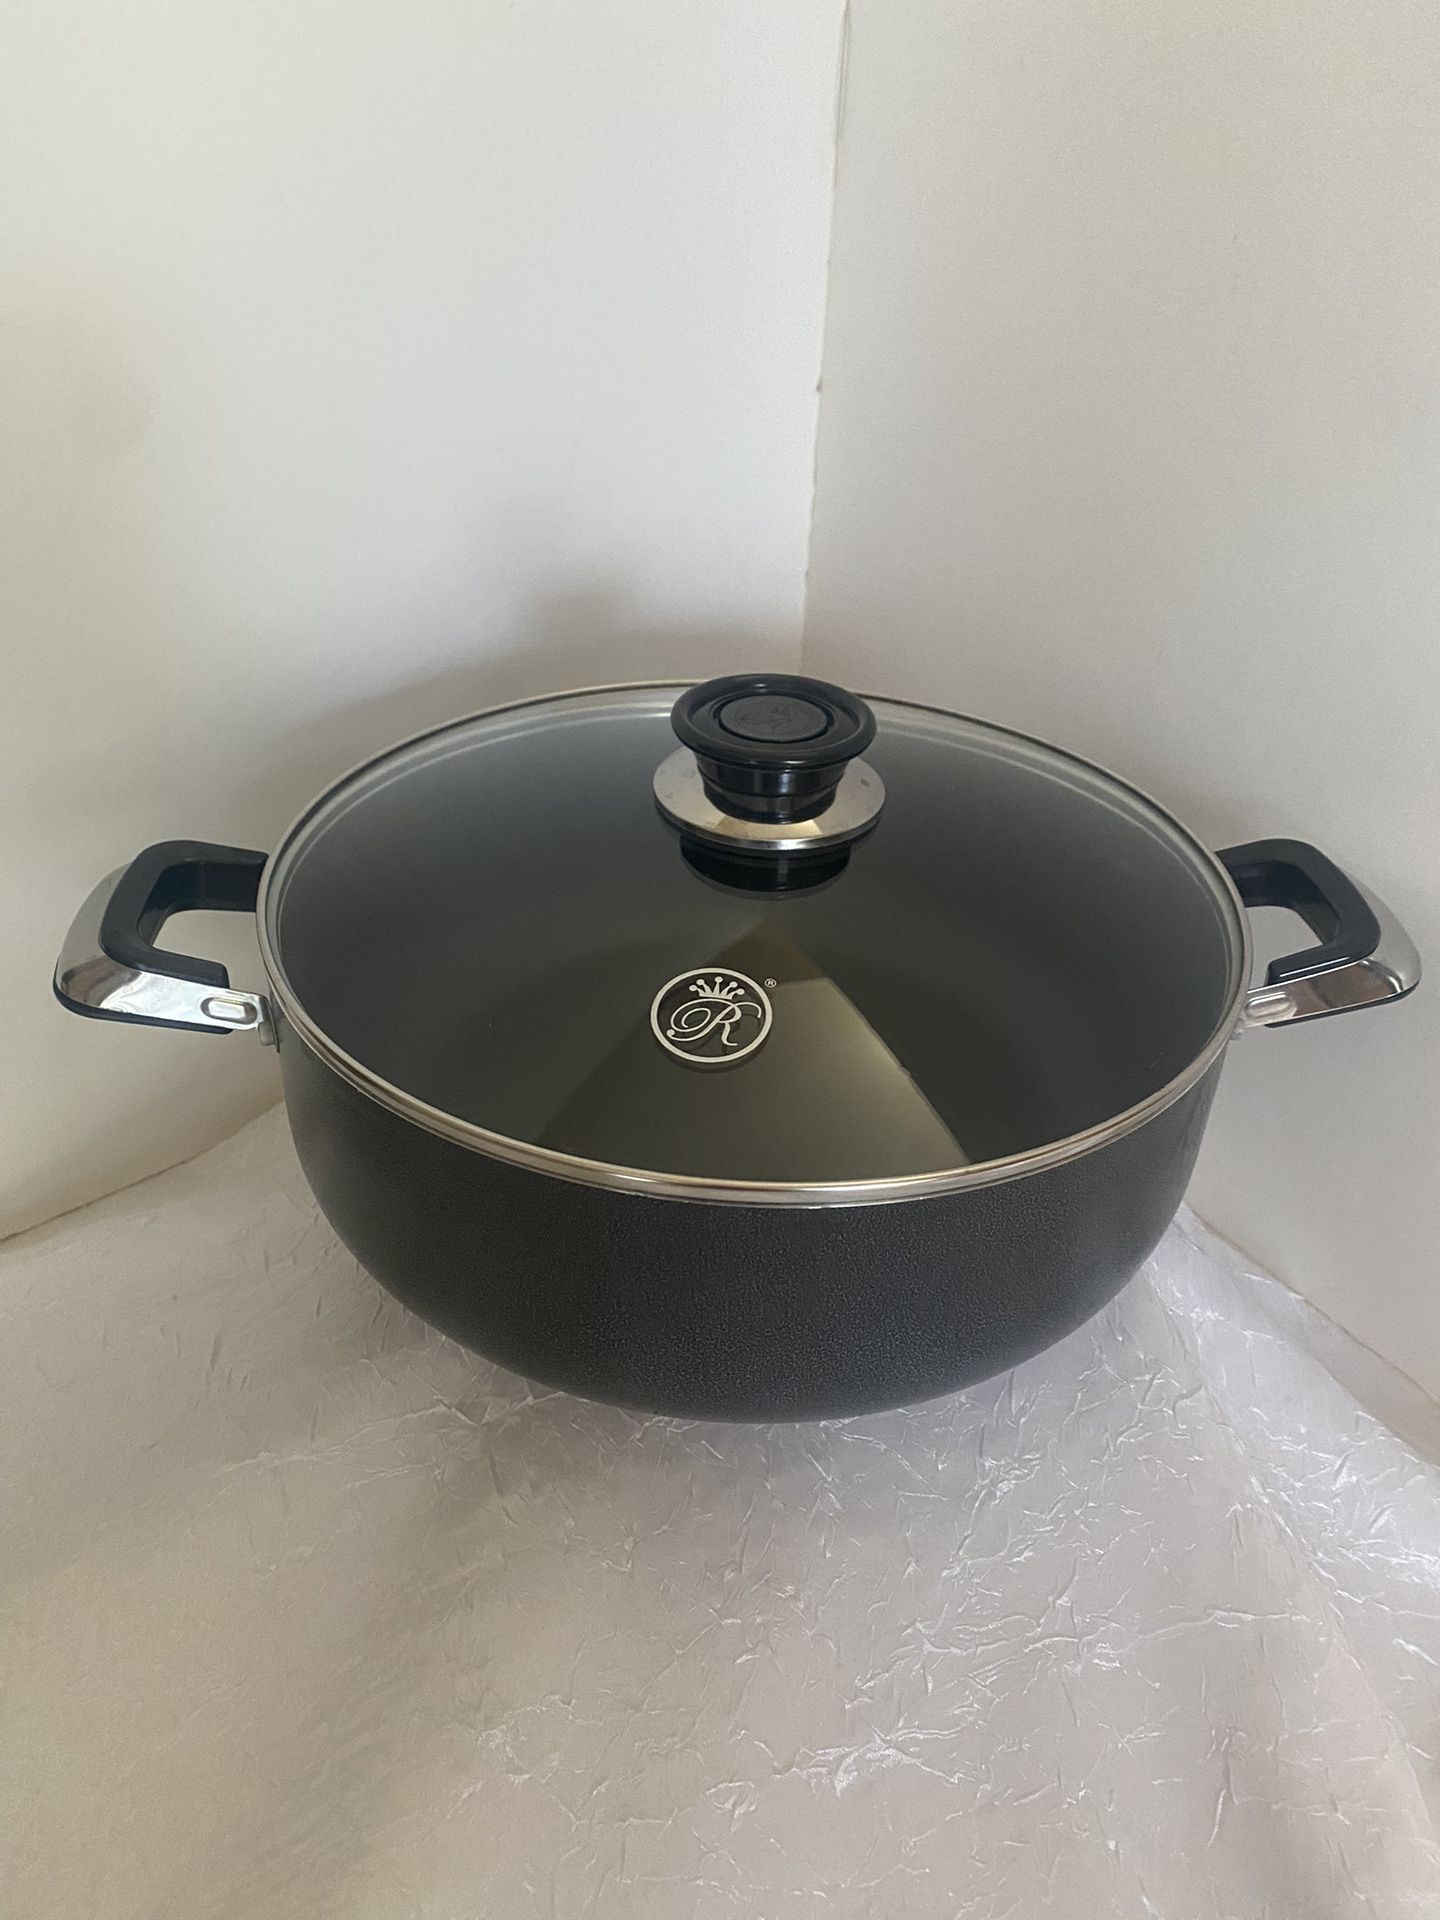 Royal Cook 4QT Aluminum Non Stick Cookware Pot $28